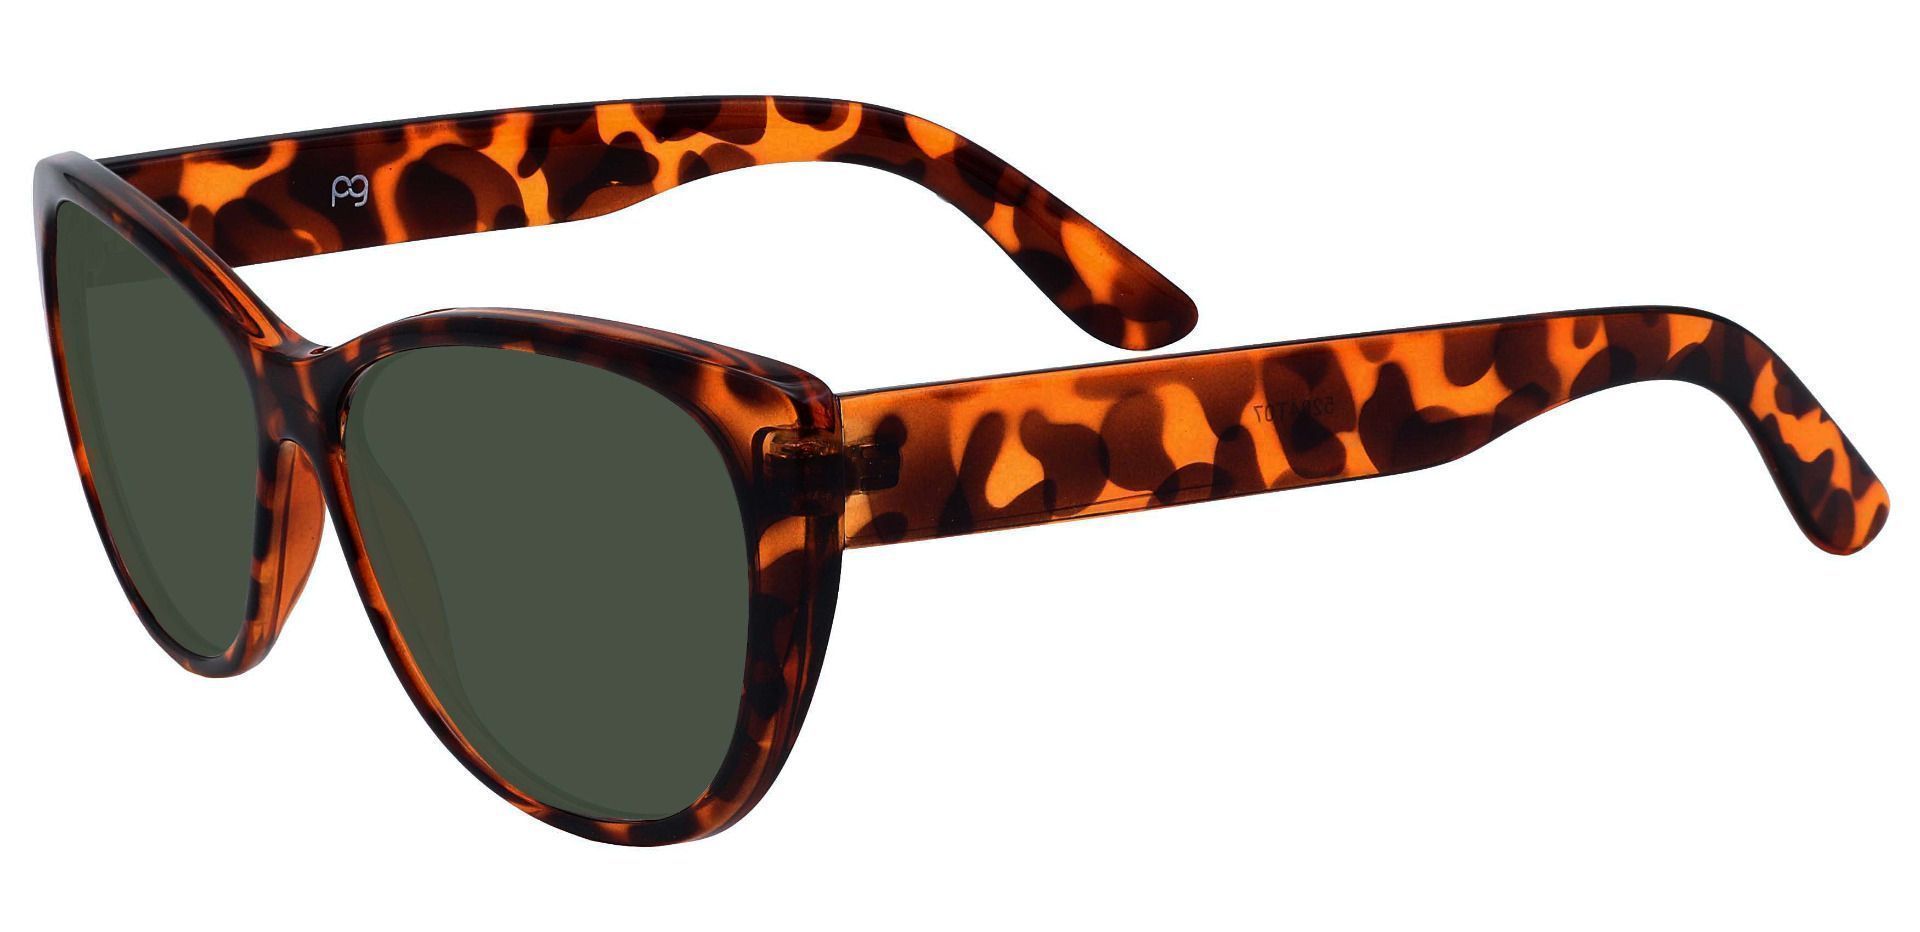 Lynn Cat-Eye Reading Sunglasses - Tortoise Frame With Green Lenses